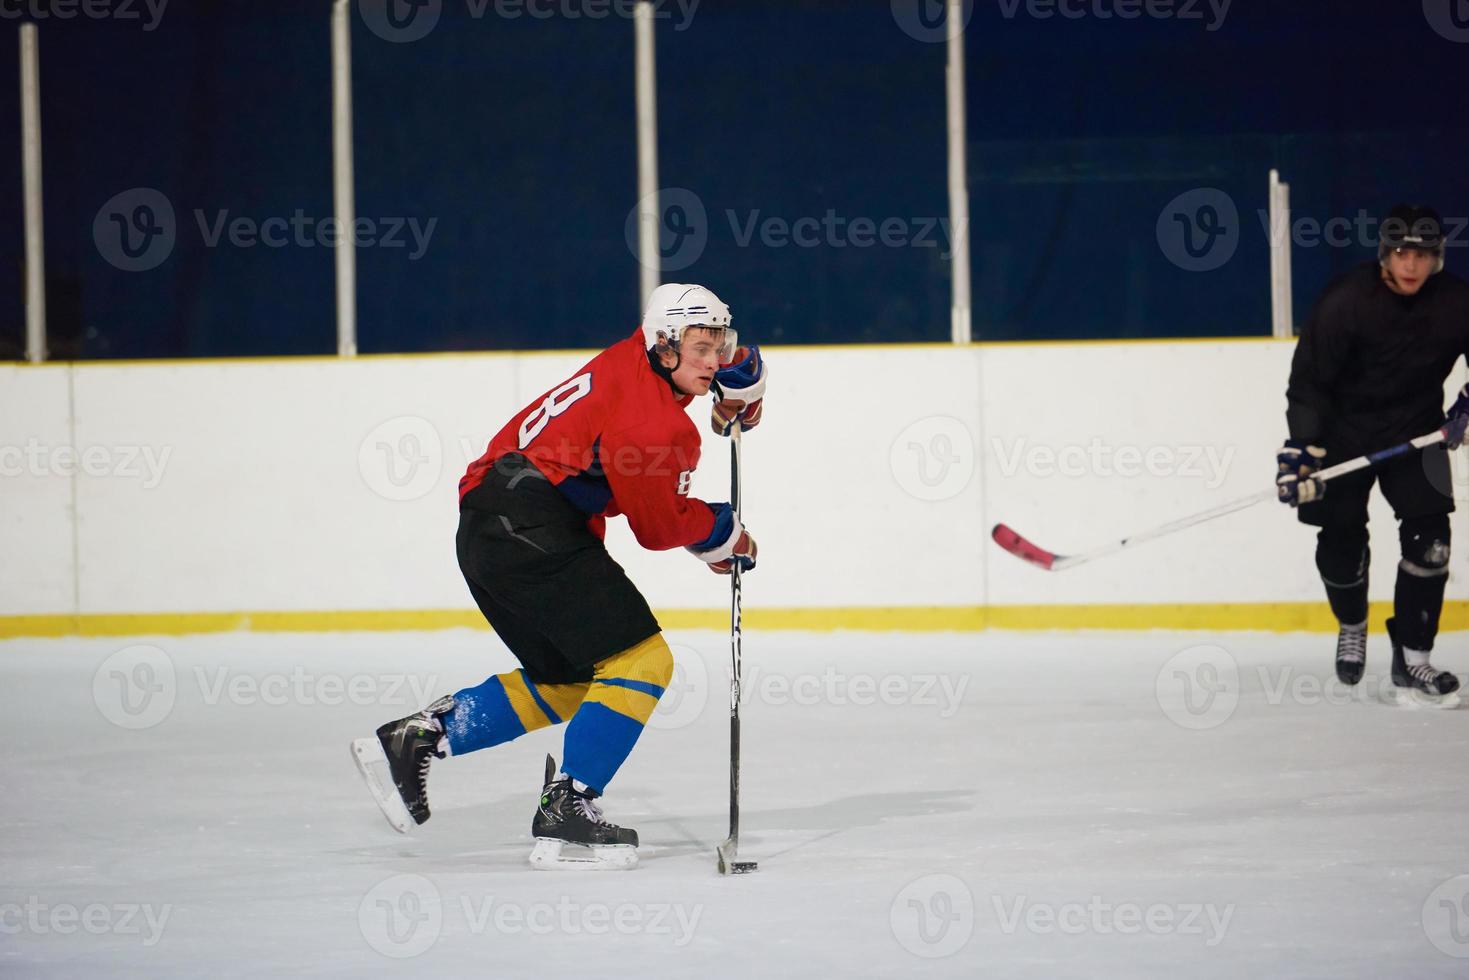 joueurs de hockey sur glace photo